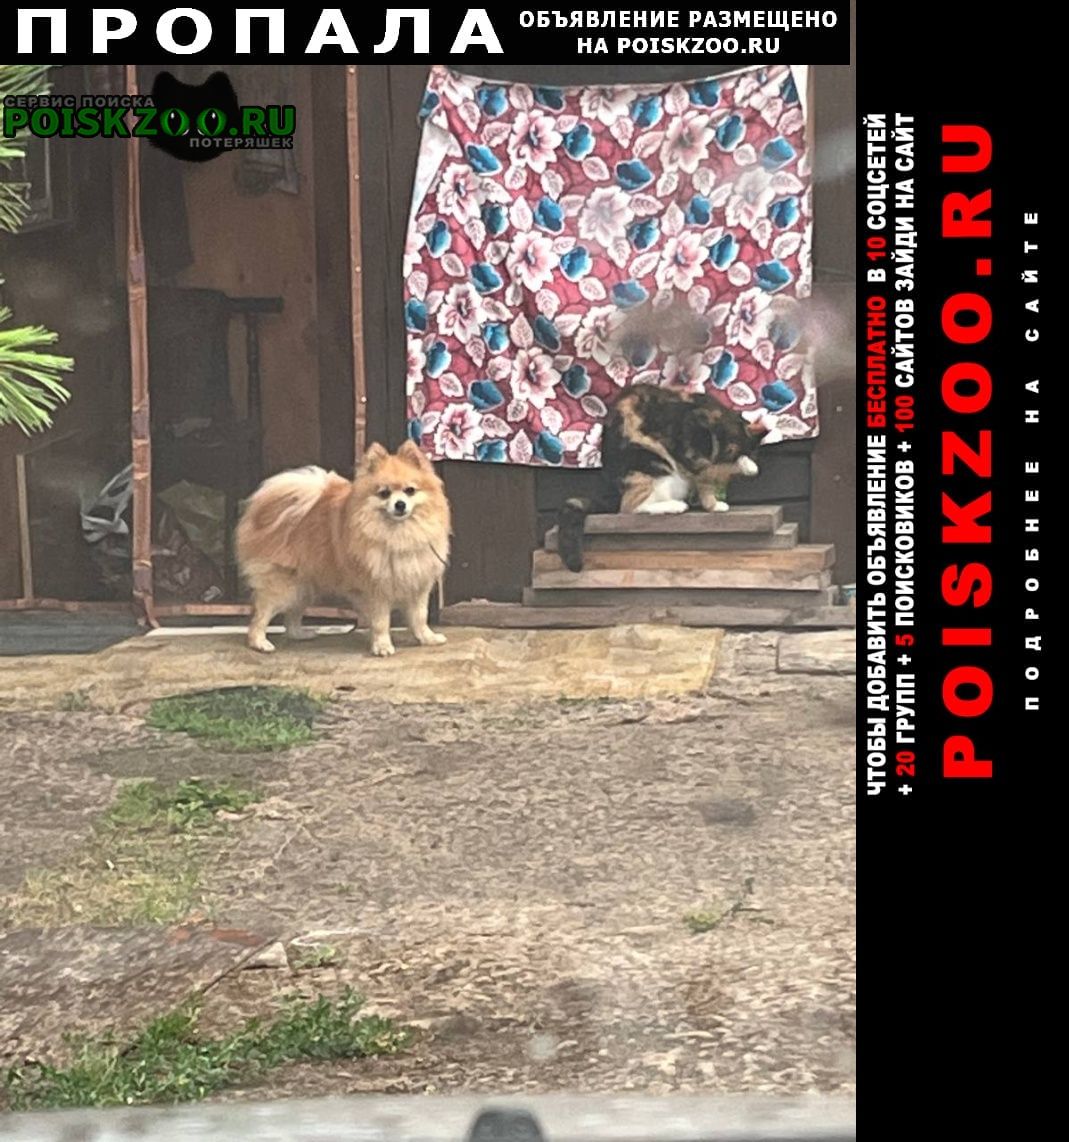 Комсомольск-на-Амуре Пропала собака кобель померанский шпиц, рыжий окрас 10 лет пот